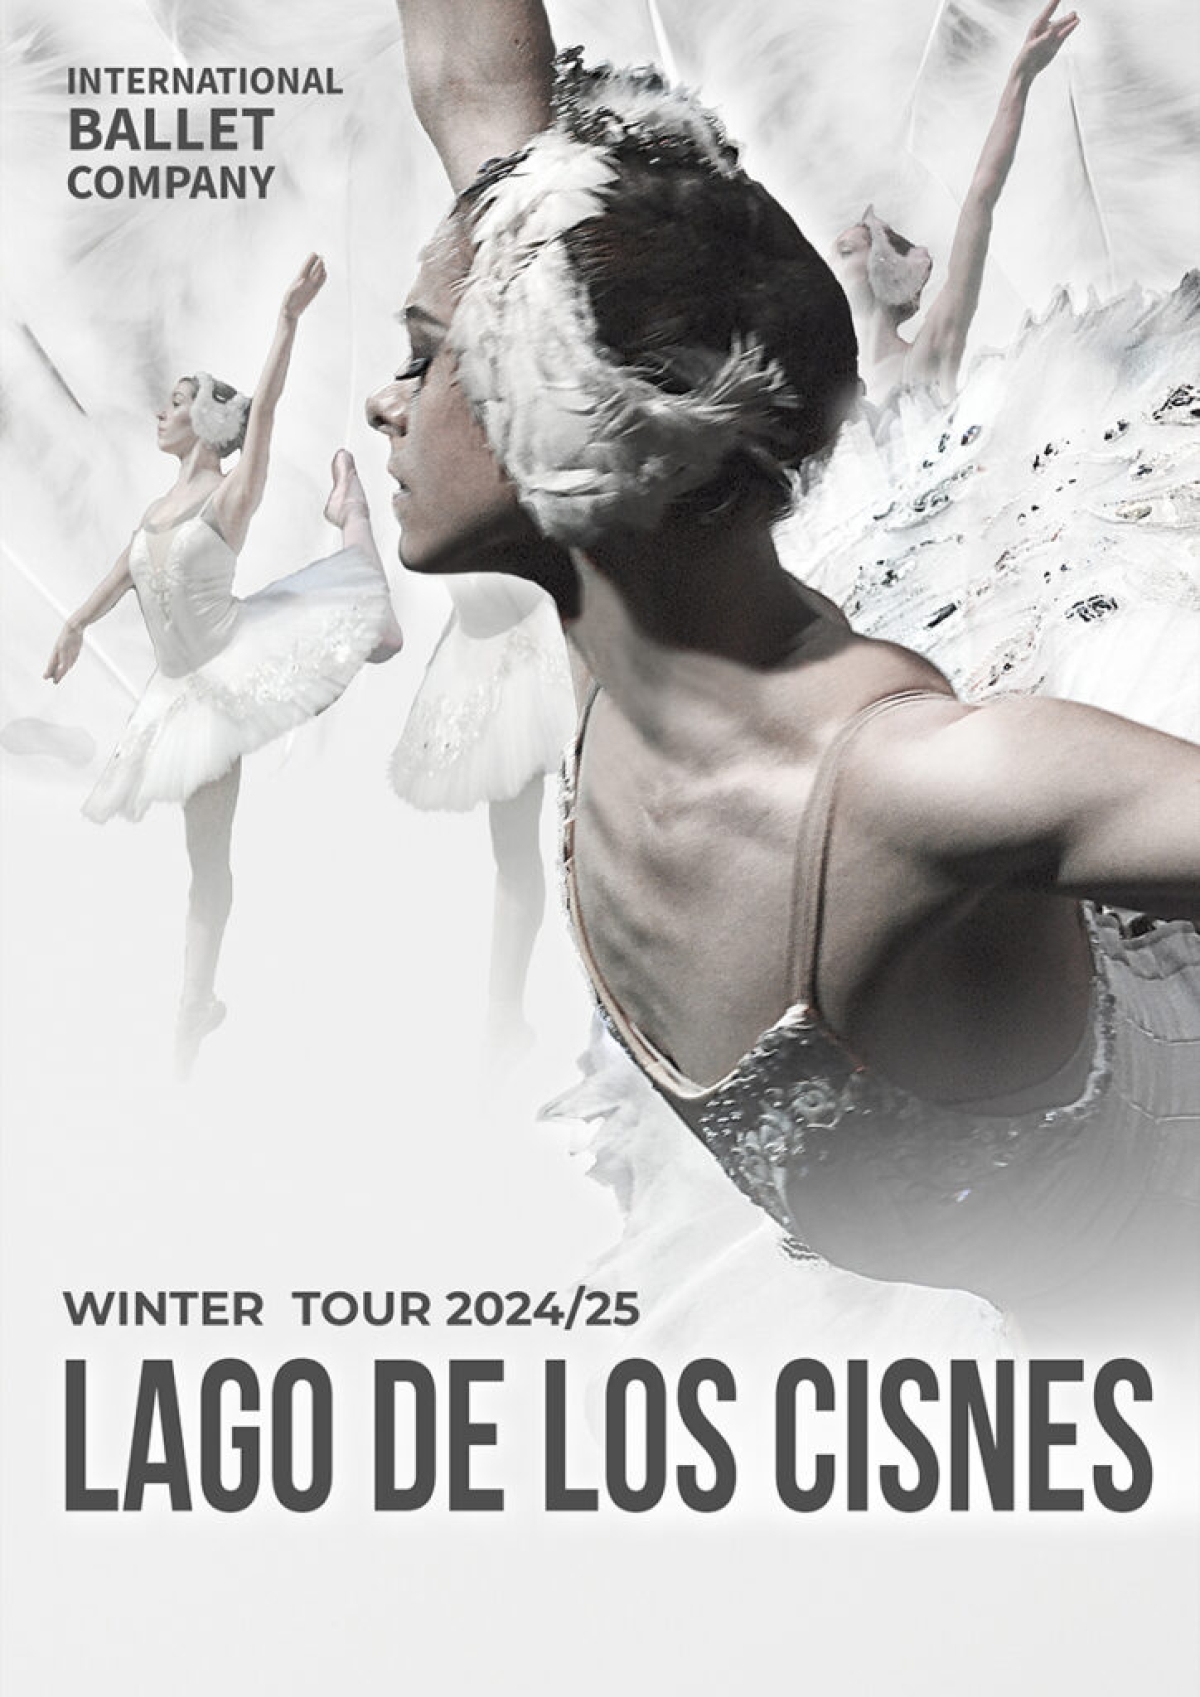   Danza ‘Lago de los cisnes’ de la International Ballet Company